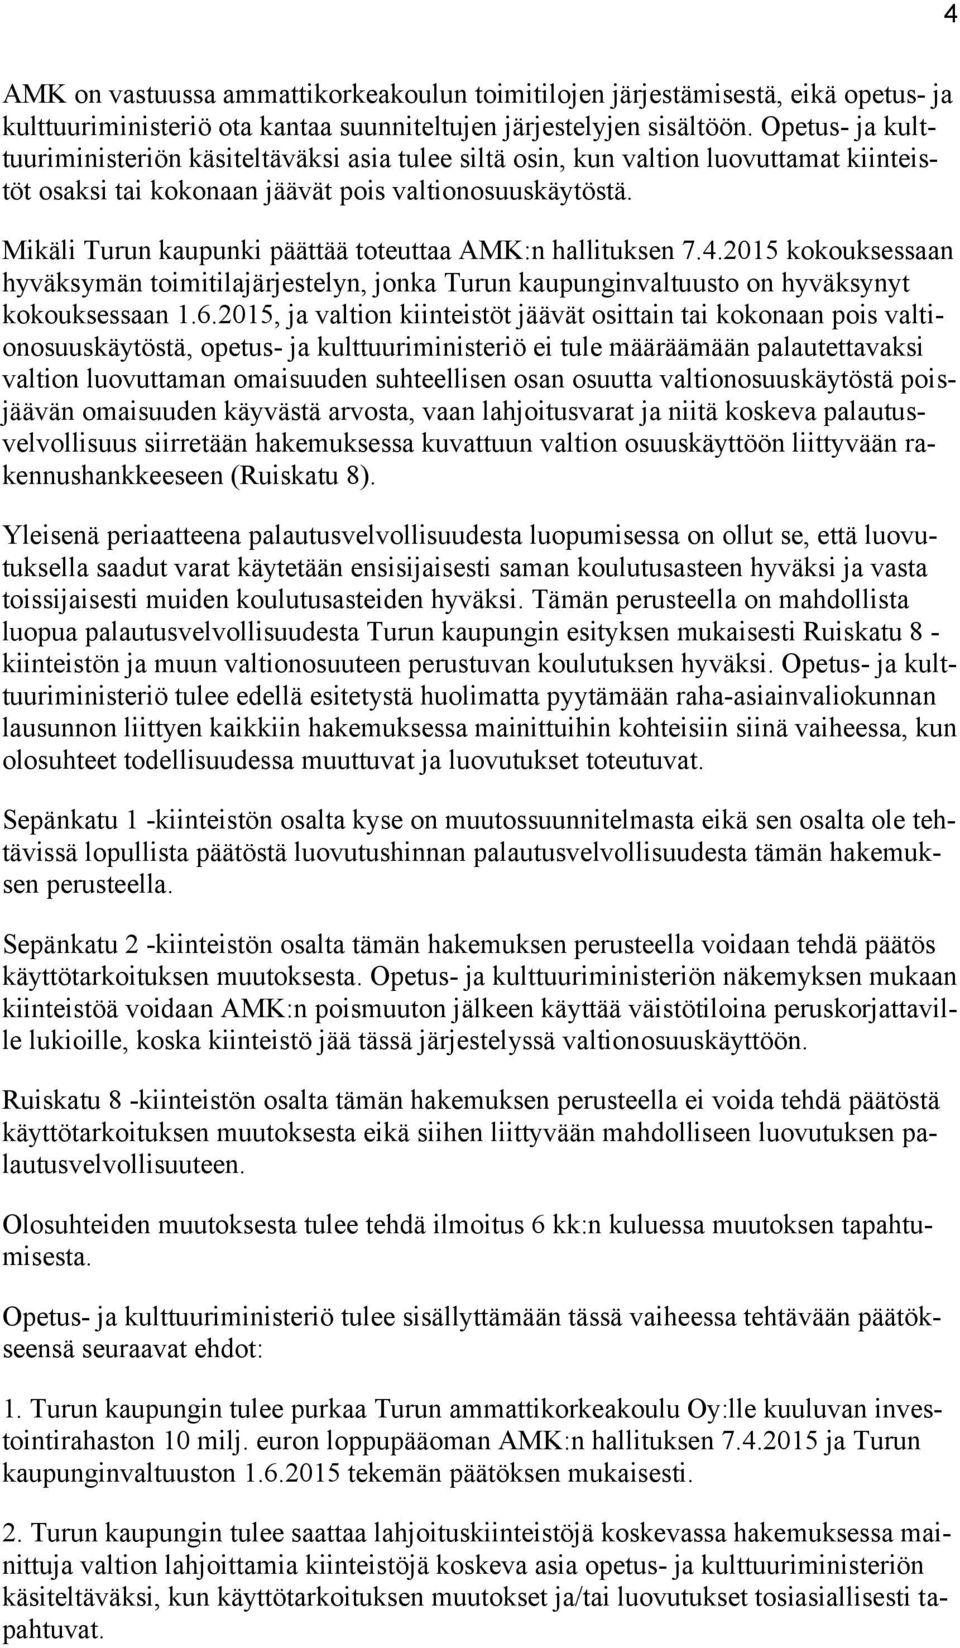 Mikäli Turun kaupunki päättää toteuttaa AMK:n hallituksen 7.4.2015 kokouksessaan hyväksymän toimitilajärjestelyn, jonka Turun kaupunginvaltuusto on hyväksynyt kokouksessaan 1.6.